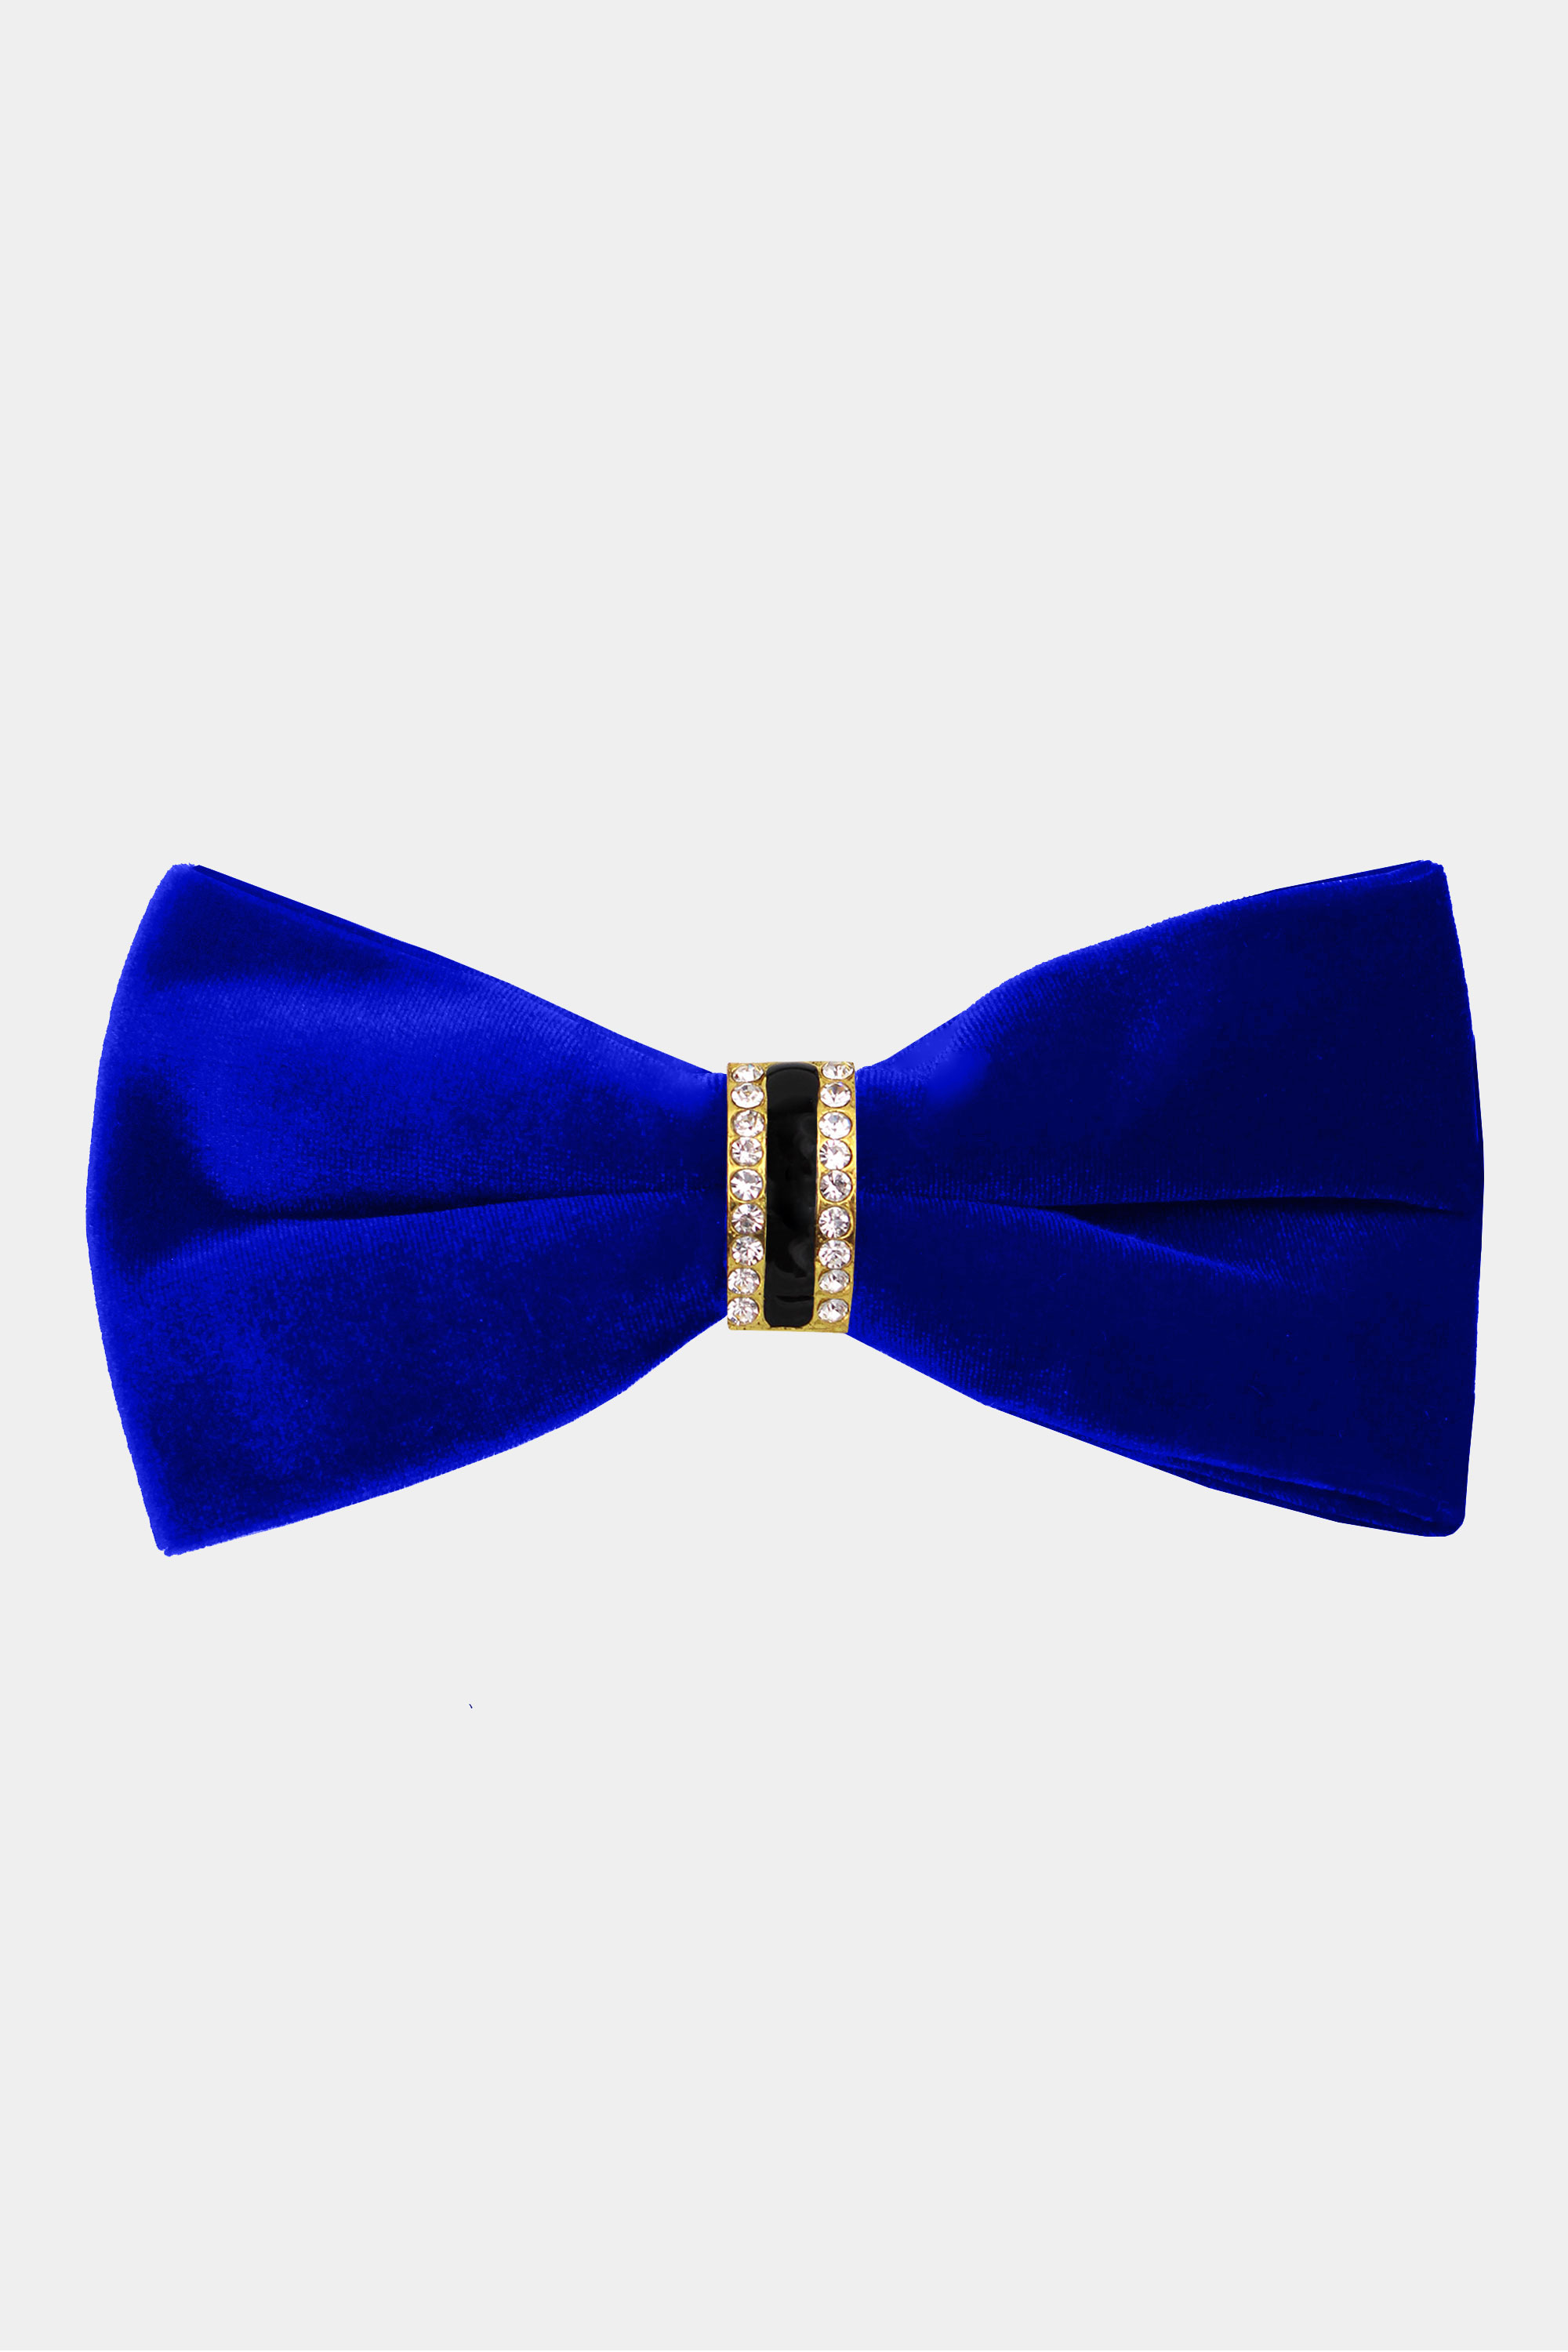 Mens-Royal-Blue-Velvet-Bow-Tie-Crystal-Luxury-Fancy-Bowtie-from-Gentlemansguru.com